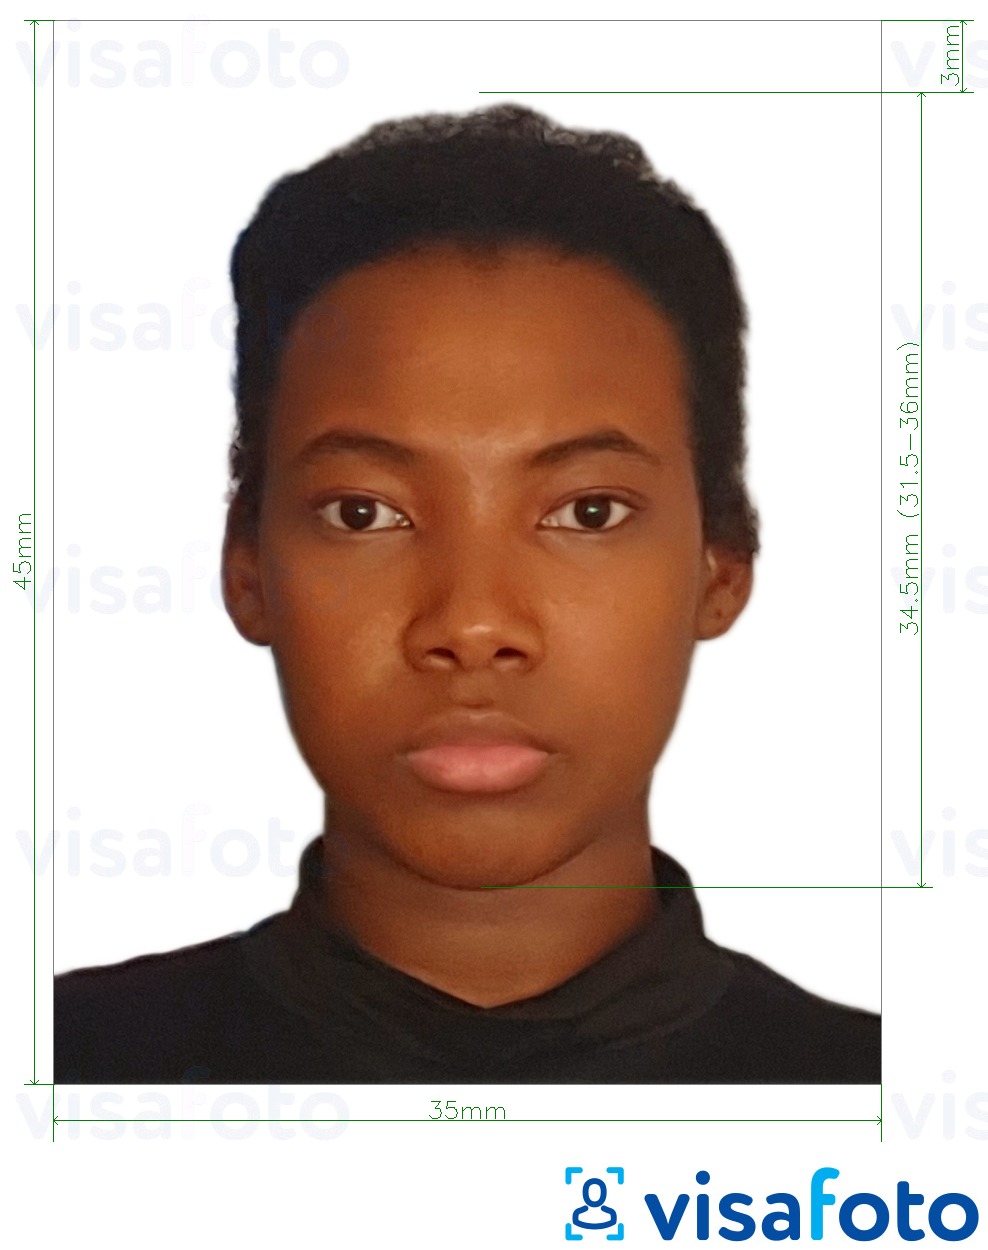 Primjer fotografije za Mozambička viza 35x45 mm (3,5x4,5 cm) s točno određenom veličinom